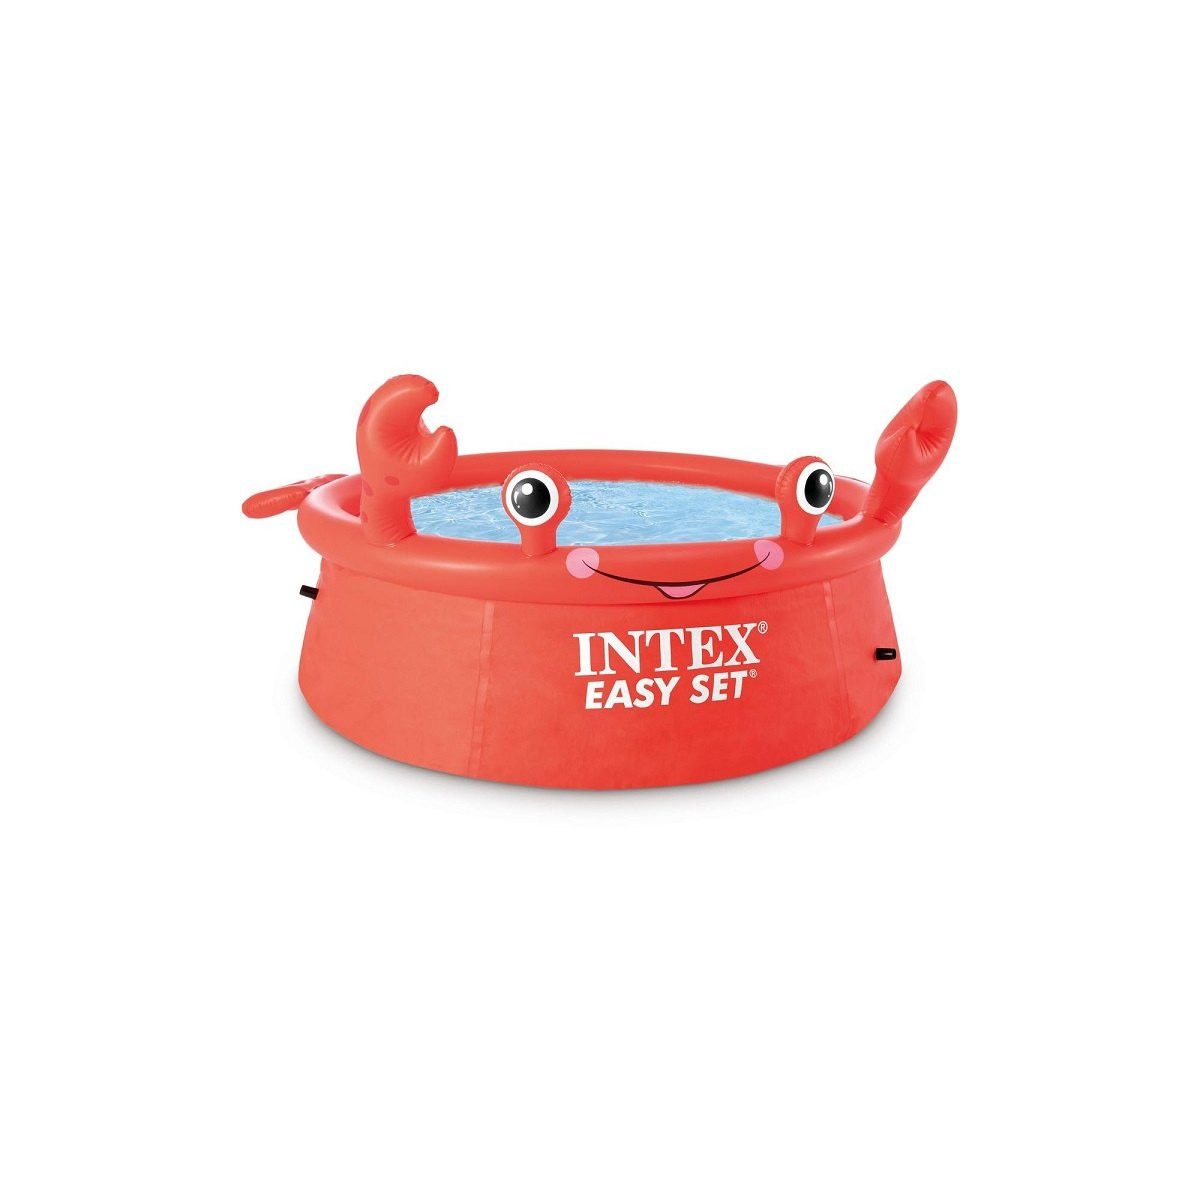 INTEX Bazén Happy krab Easy Set 1,83mx51cm 26100